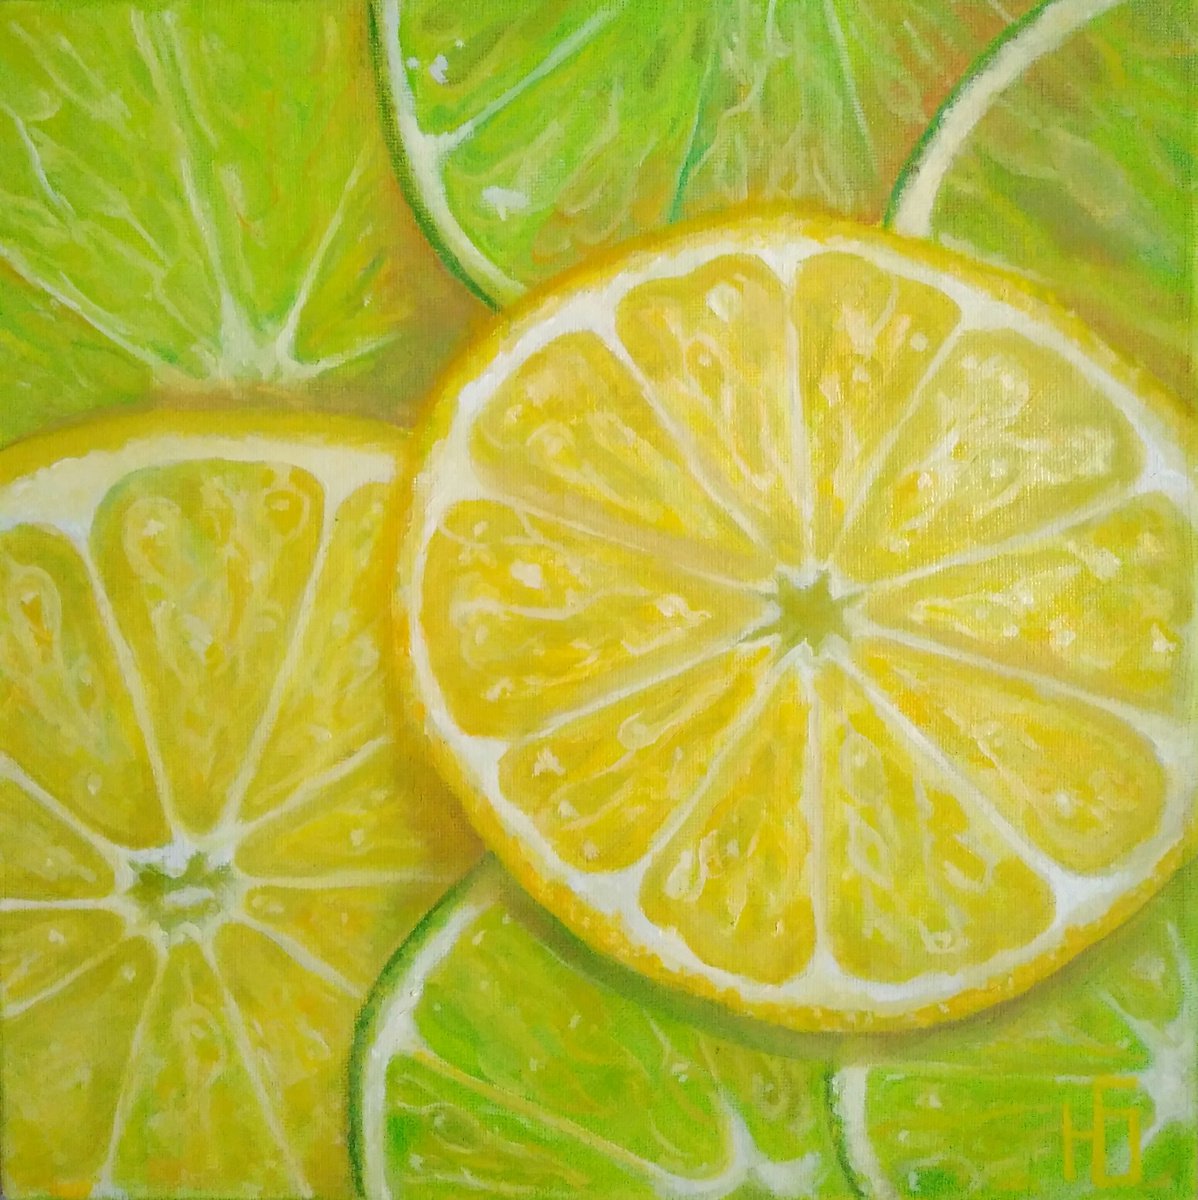 Lemon and lime slices by Yulia Berseneva